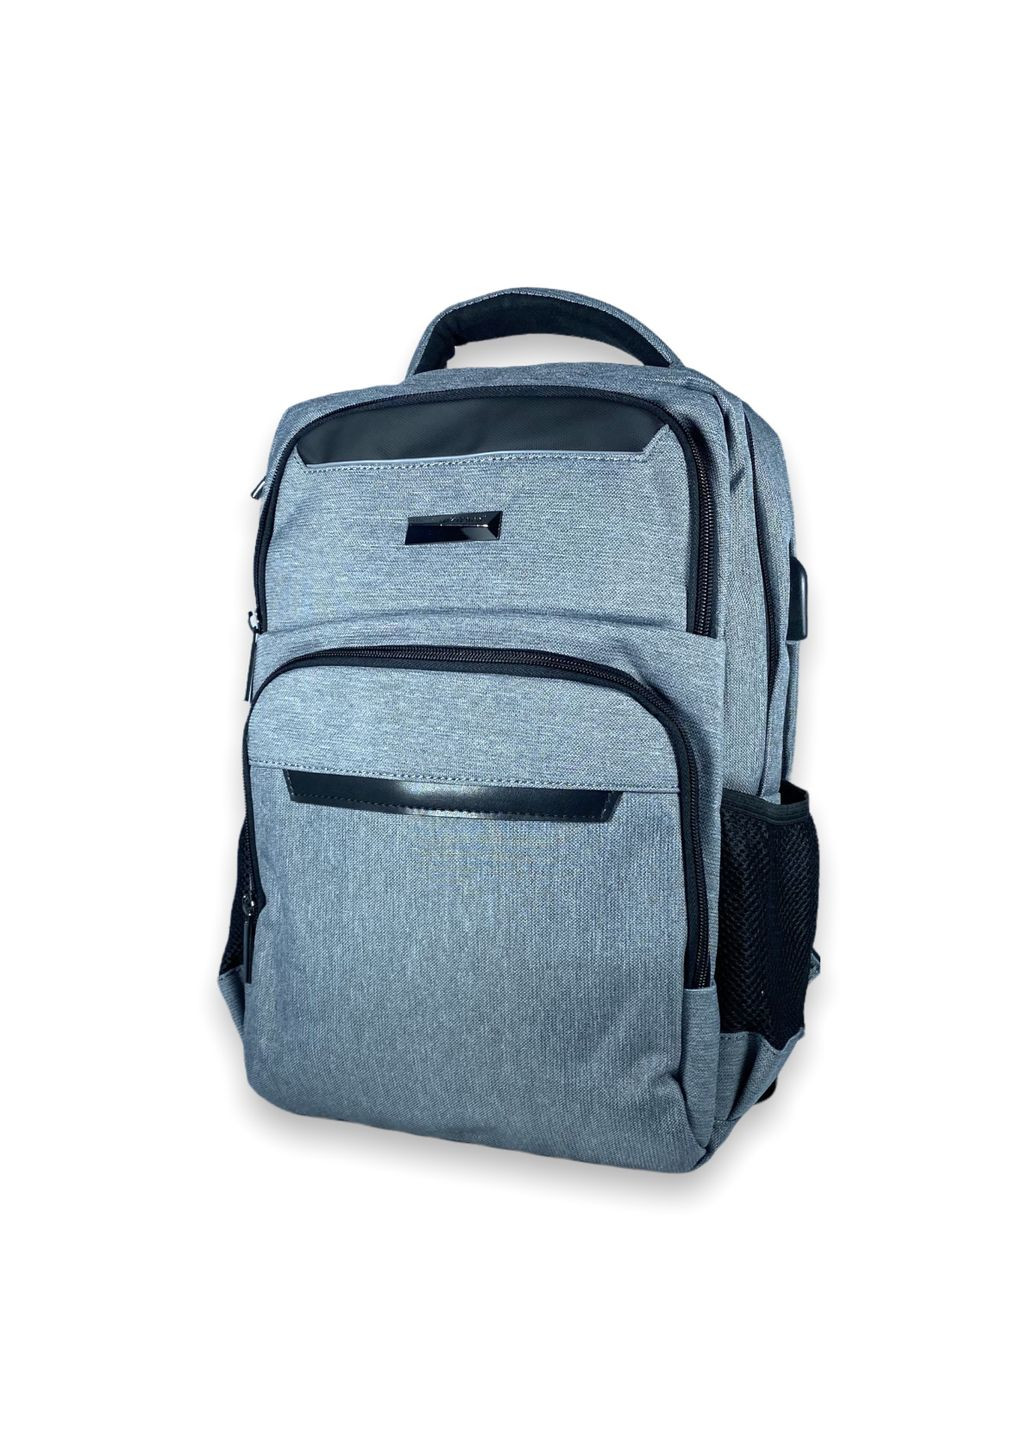 Міський рюкзак 15 л, 3 відділи, USB роз'єм, кабель, одна фронтальна кишеня, розмір: 40*28*14 см, сірий Catesigo (284338150)